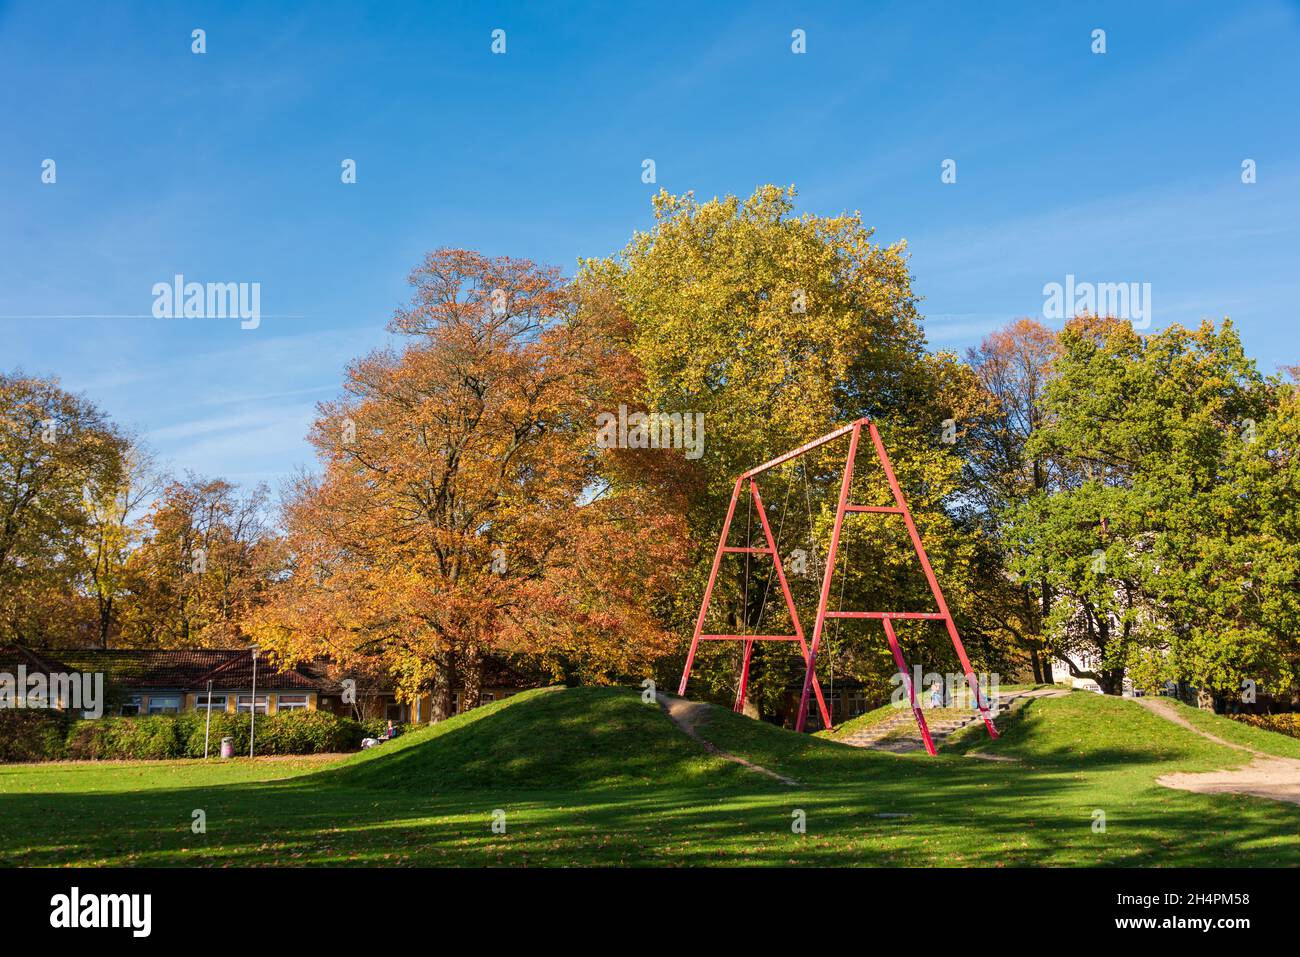 Kinderspielplatz in einem Stadtpark in Norddeutschland mit Bäumen im farbigen Herbstlaub Foto Stock